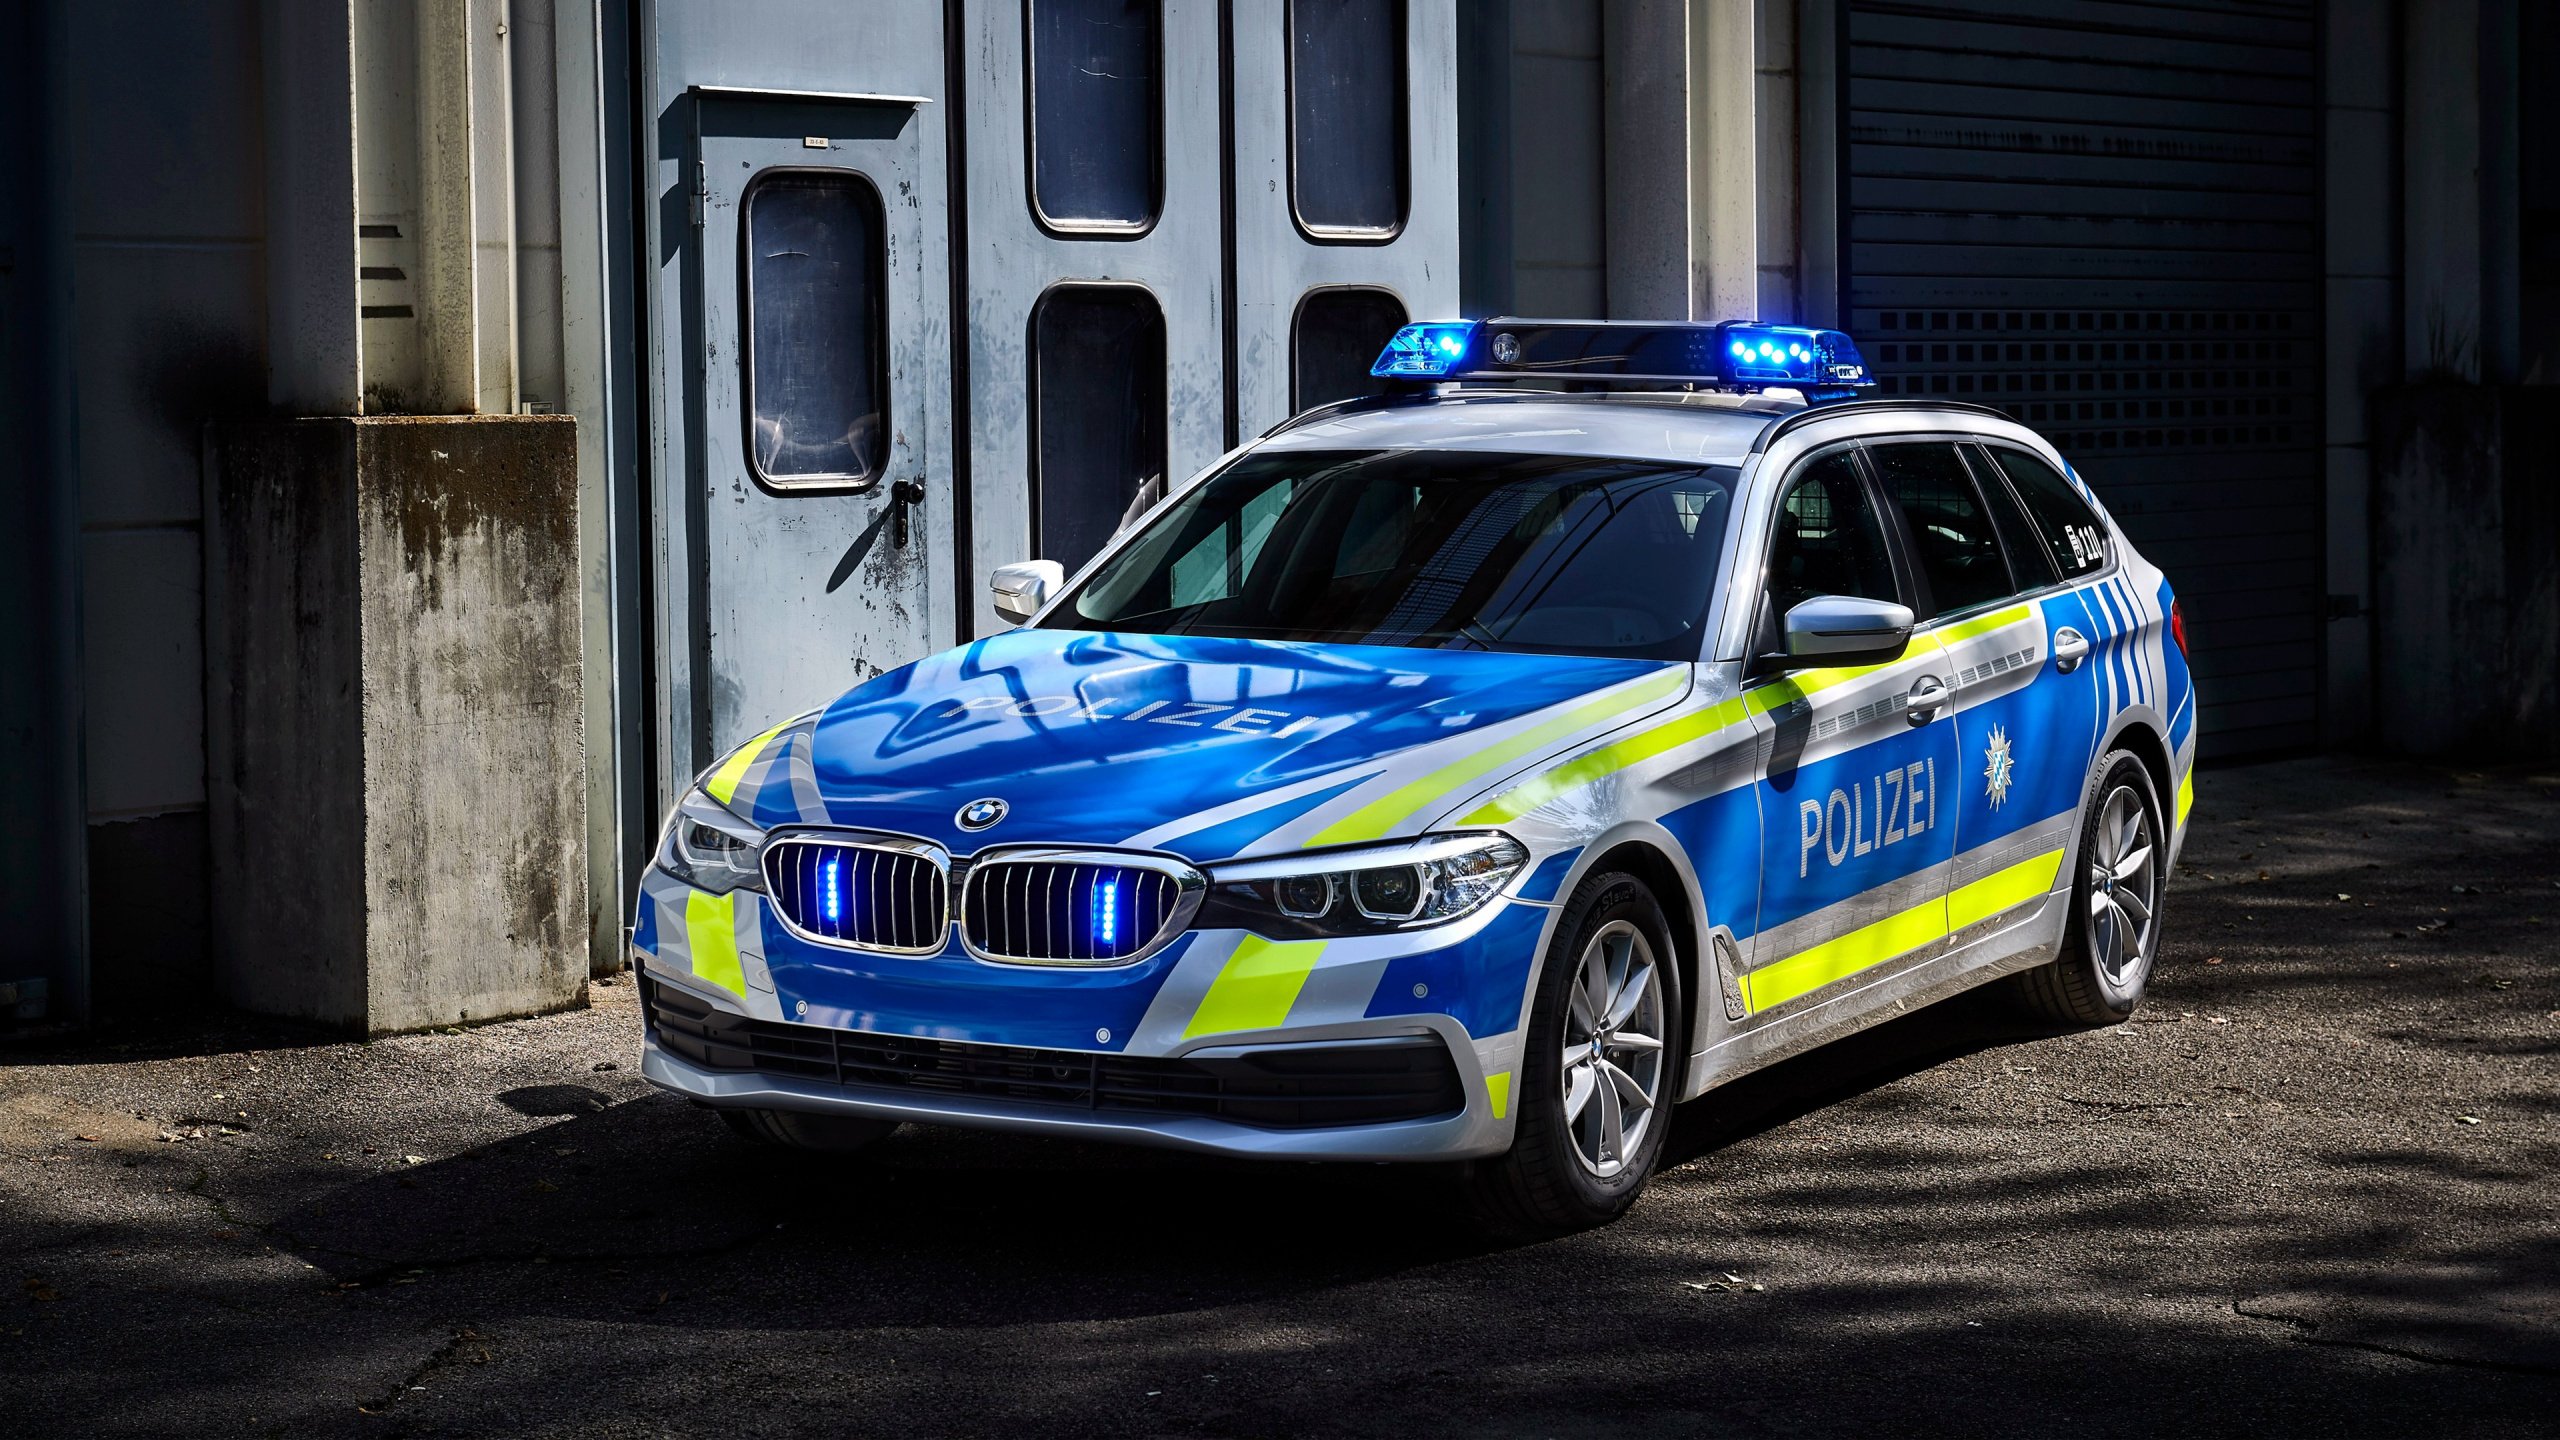 Полицейская машина автомобиля. Полиция БМВ 530. BMW m3 Police. БМВ 545i Police. BMW Polizei.